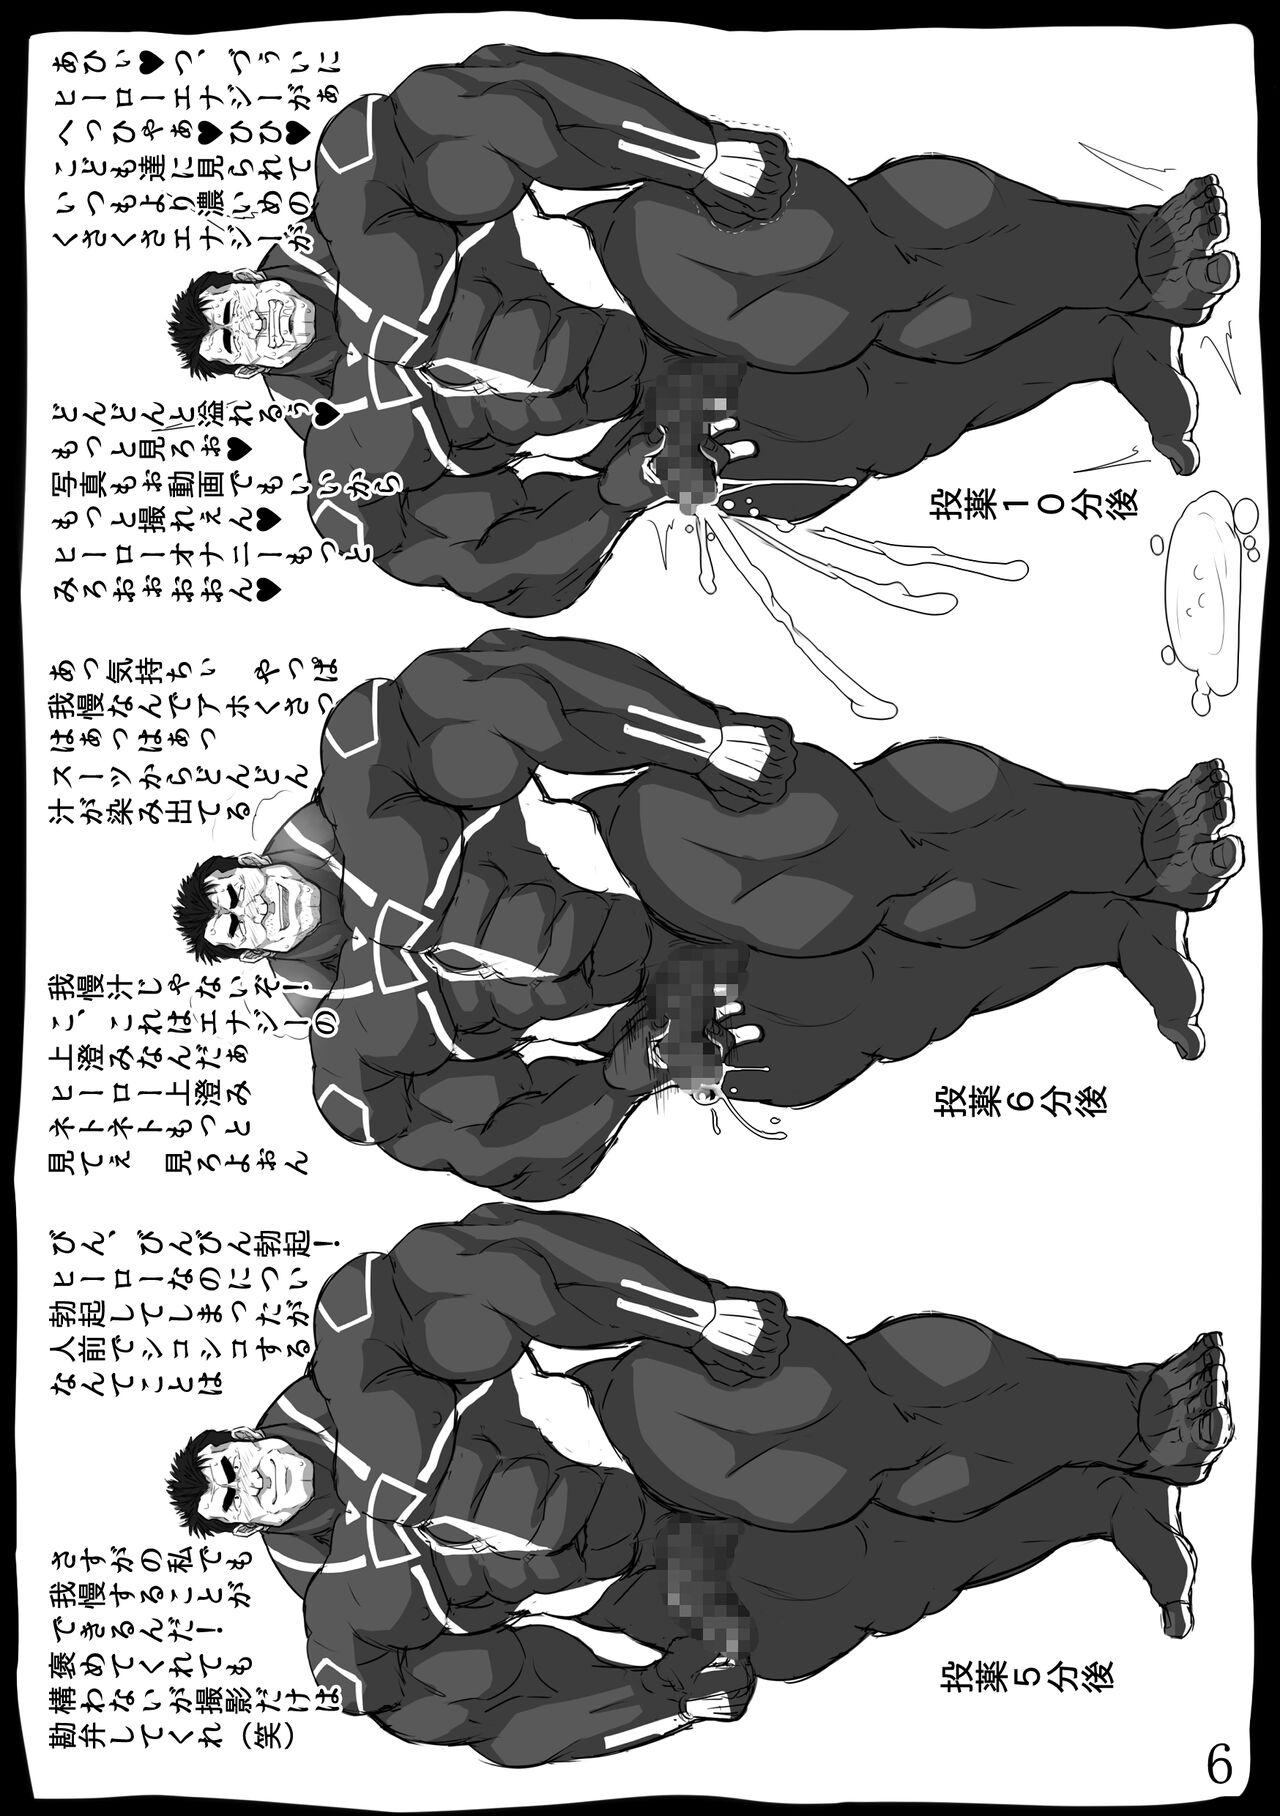 Metendo Taiiku Kyousi Hideo Ooyamadai Hyakka Peitos - Page 7